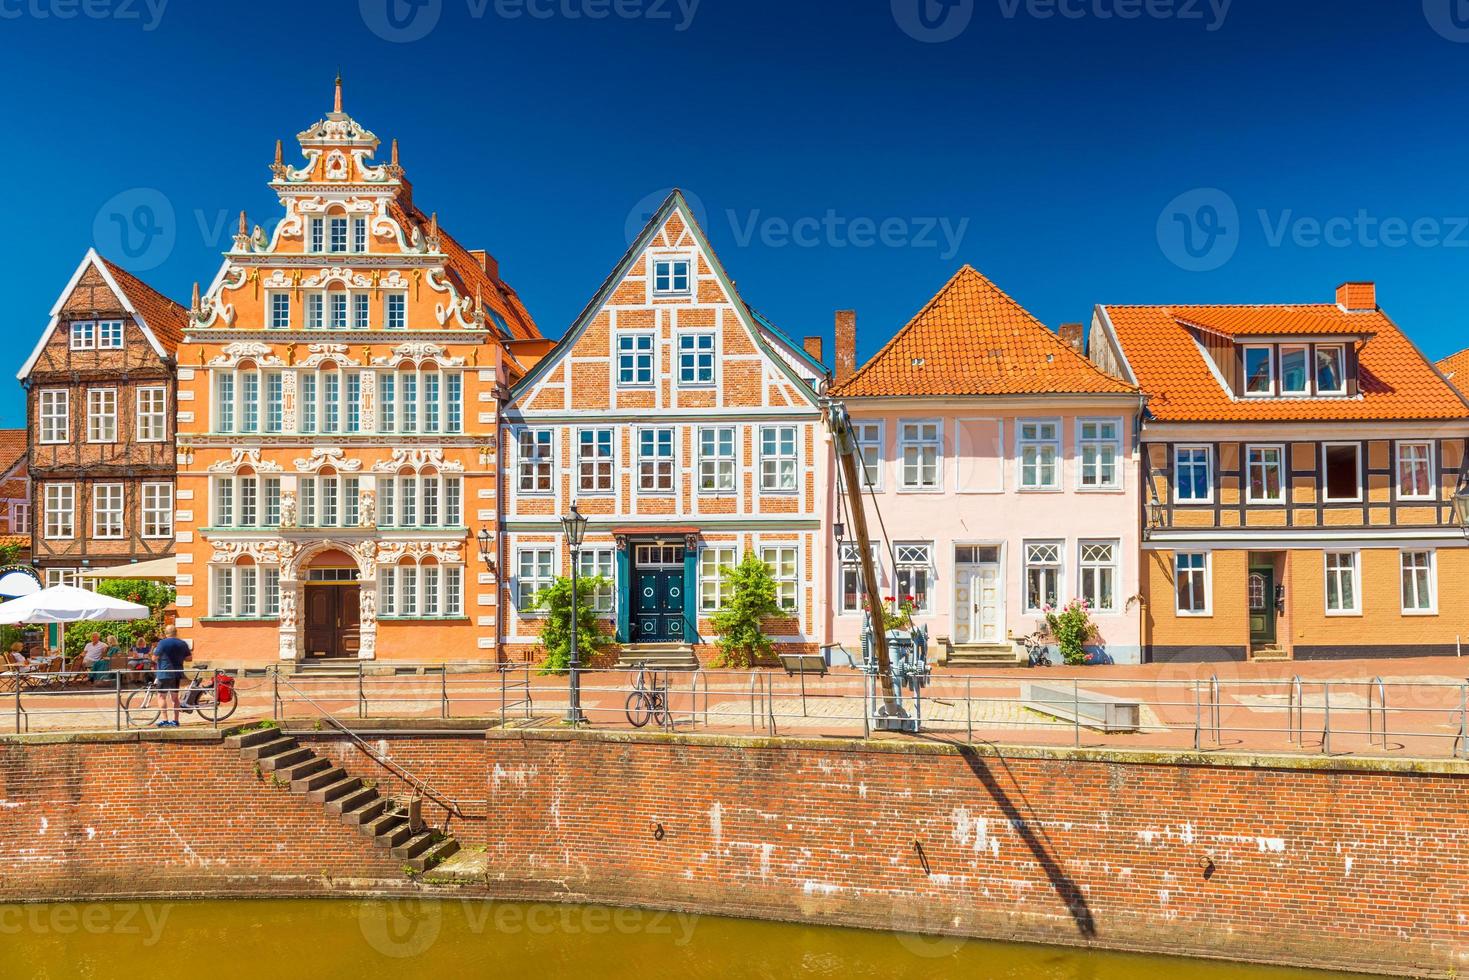 weergave van mooie huizen in de traditionele Duitse architectuurstijl. stade, duitsland foto